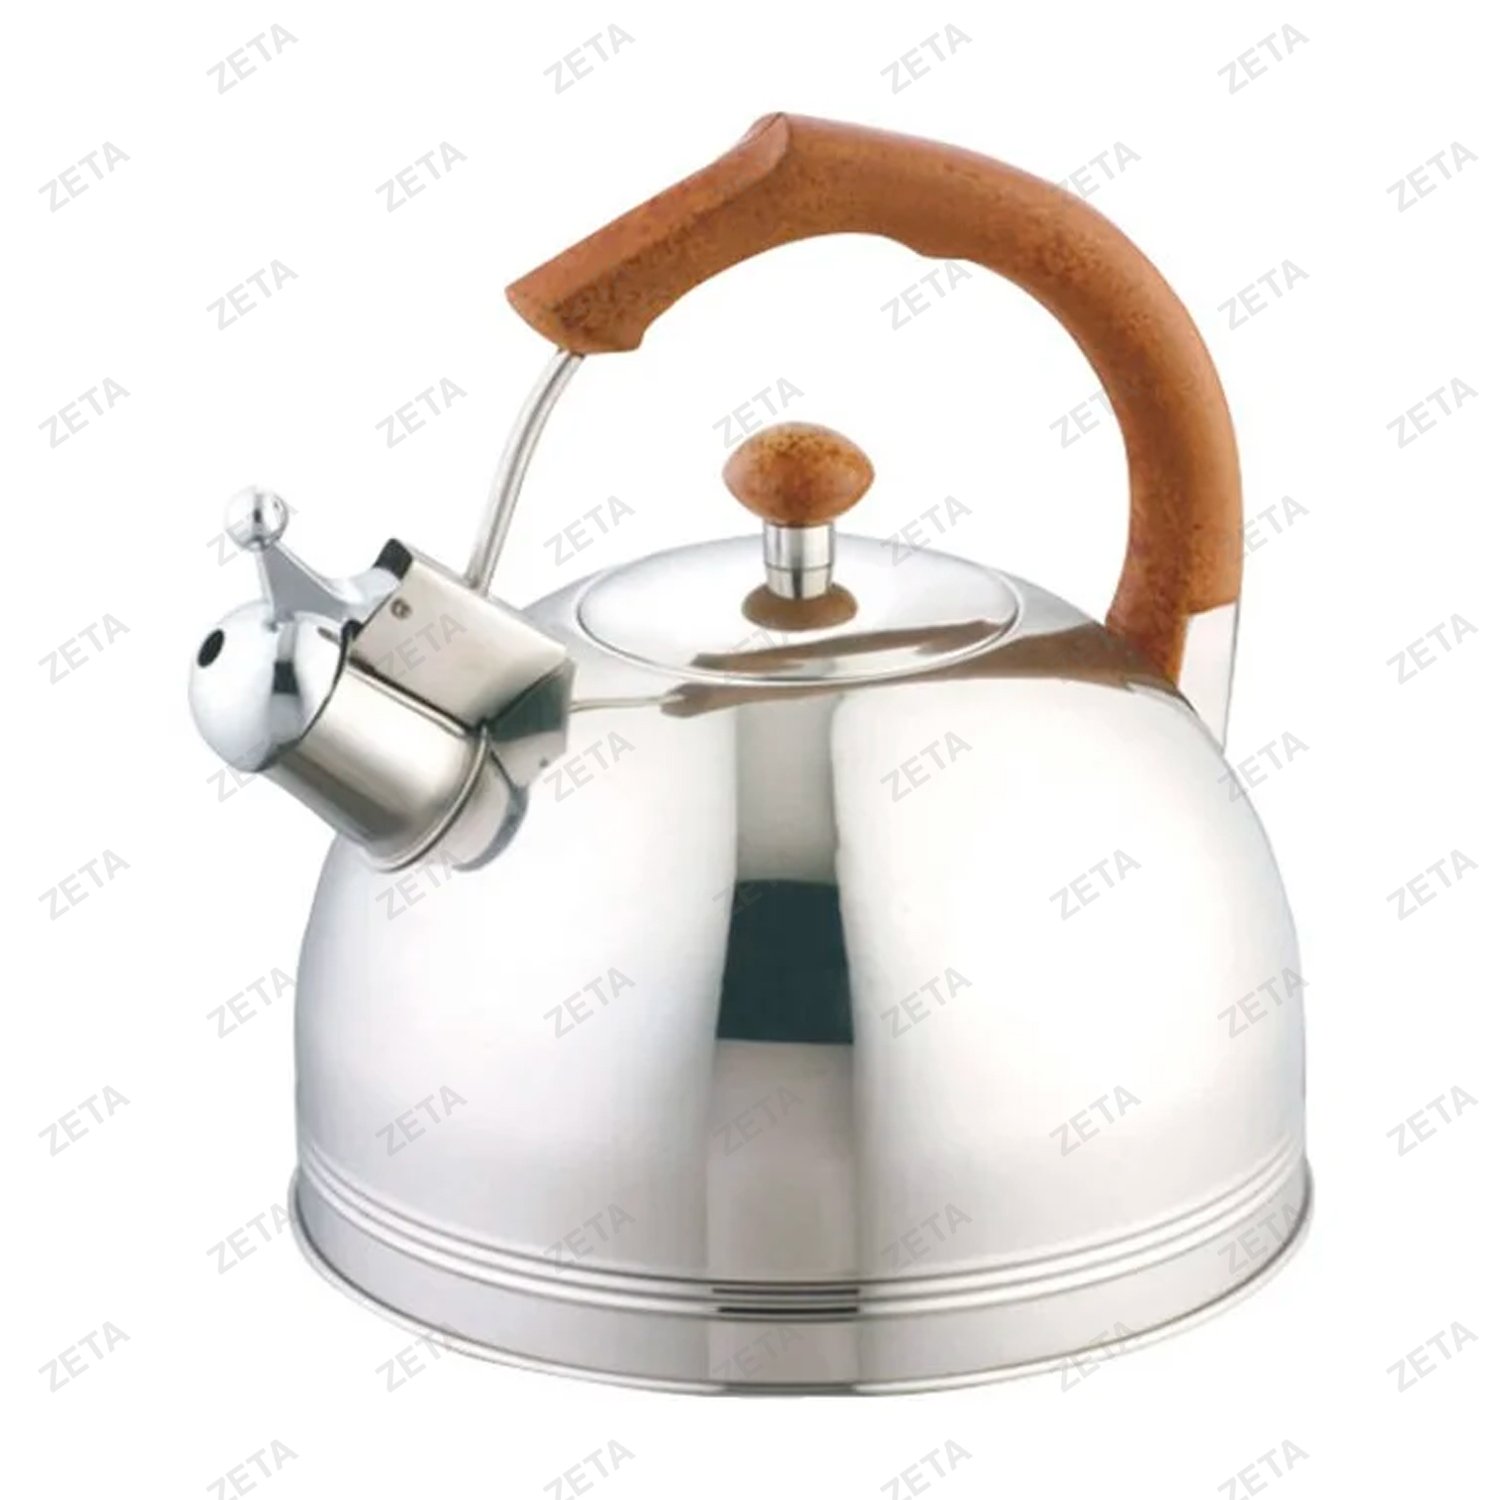 Чайник со свистком LKD-003 3,5 л. серебристый/коричневый Appetite - изображение 1